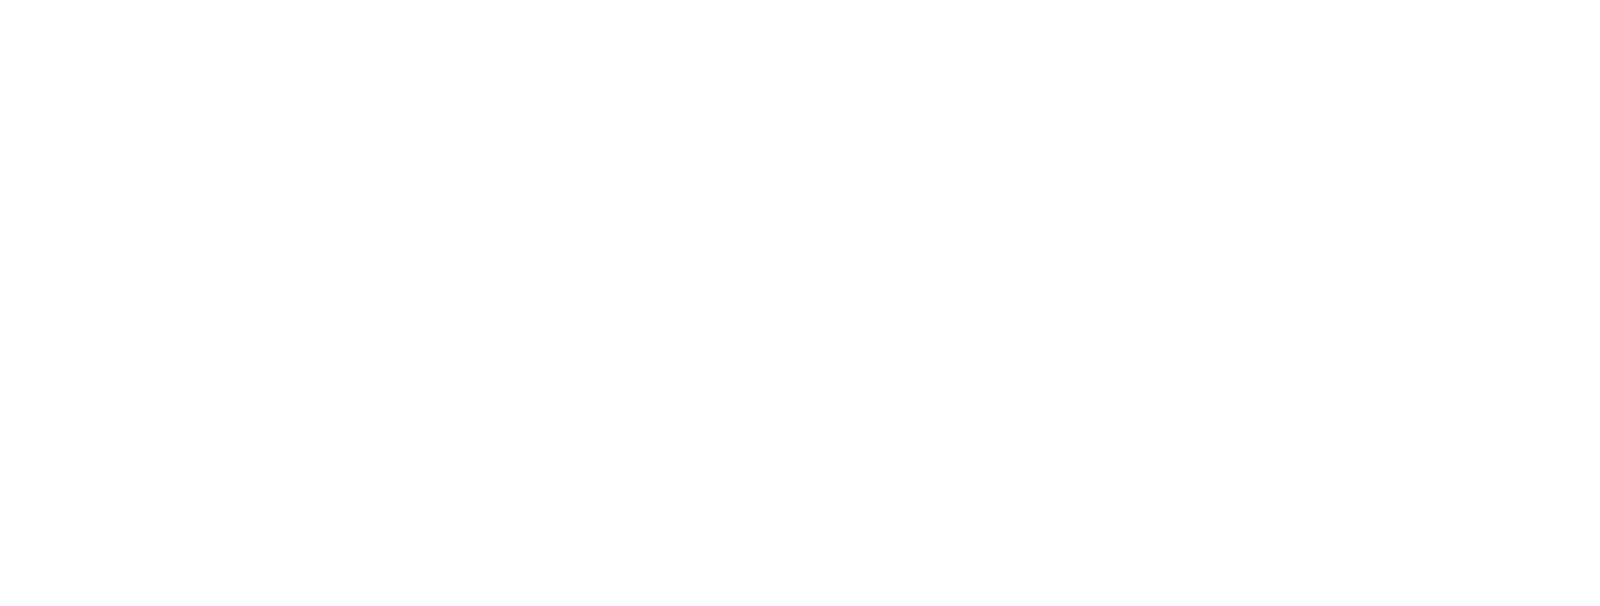 映画『土竜の唄 FINAL』11.19 Fri. ROADSHOW セブンネット限定グッズ付き映画前売券 映画「土竜の唄 FINAL」オリジナル MOGURA NO UTA ふぁいなる 巾着型エコバッグ